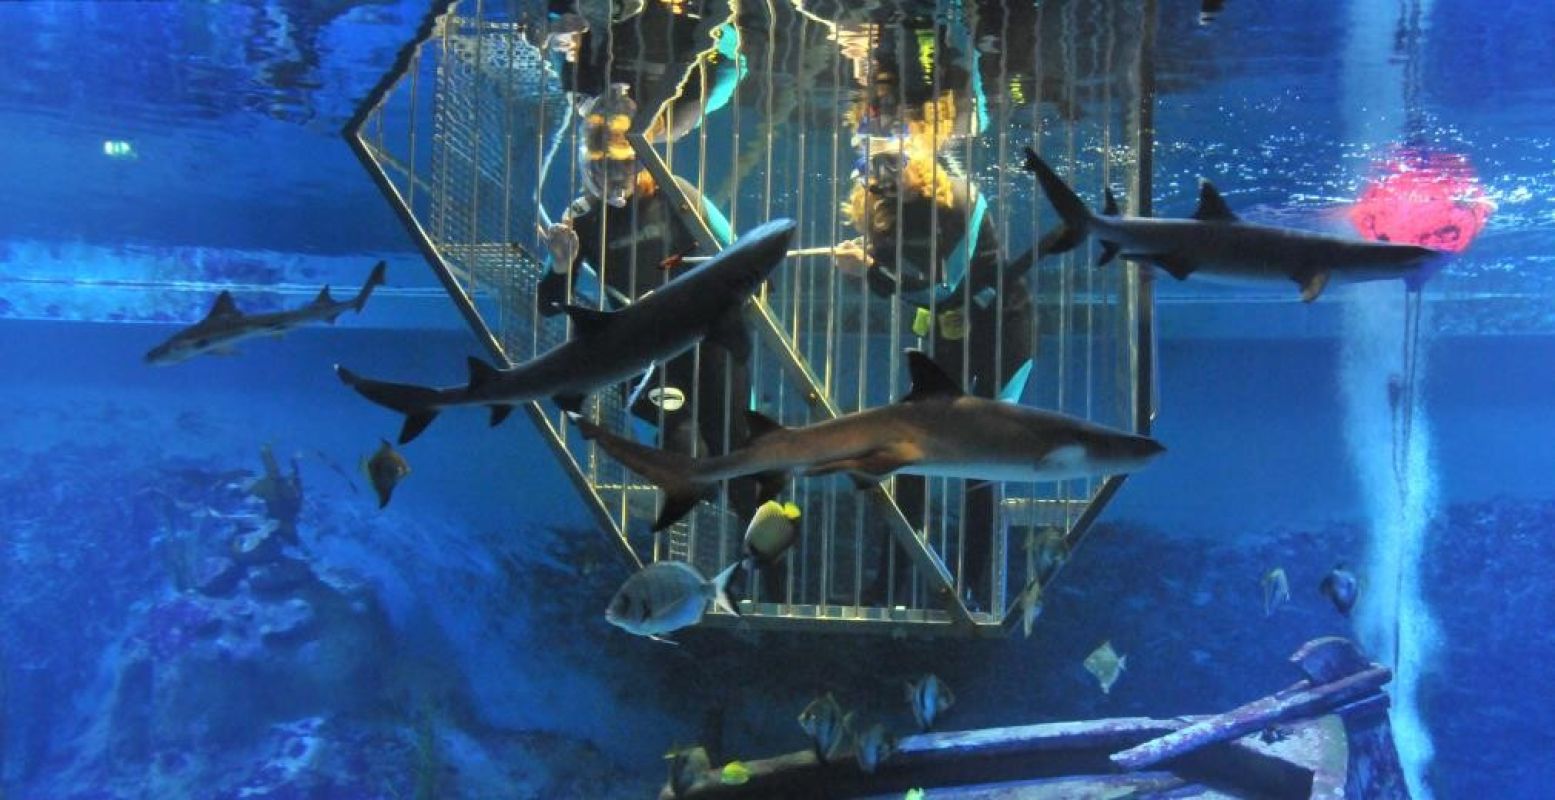 Zwem tussen de haaien in een speciale duikkooi. Foto: Neeltje Jans.